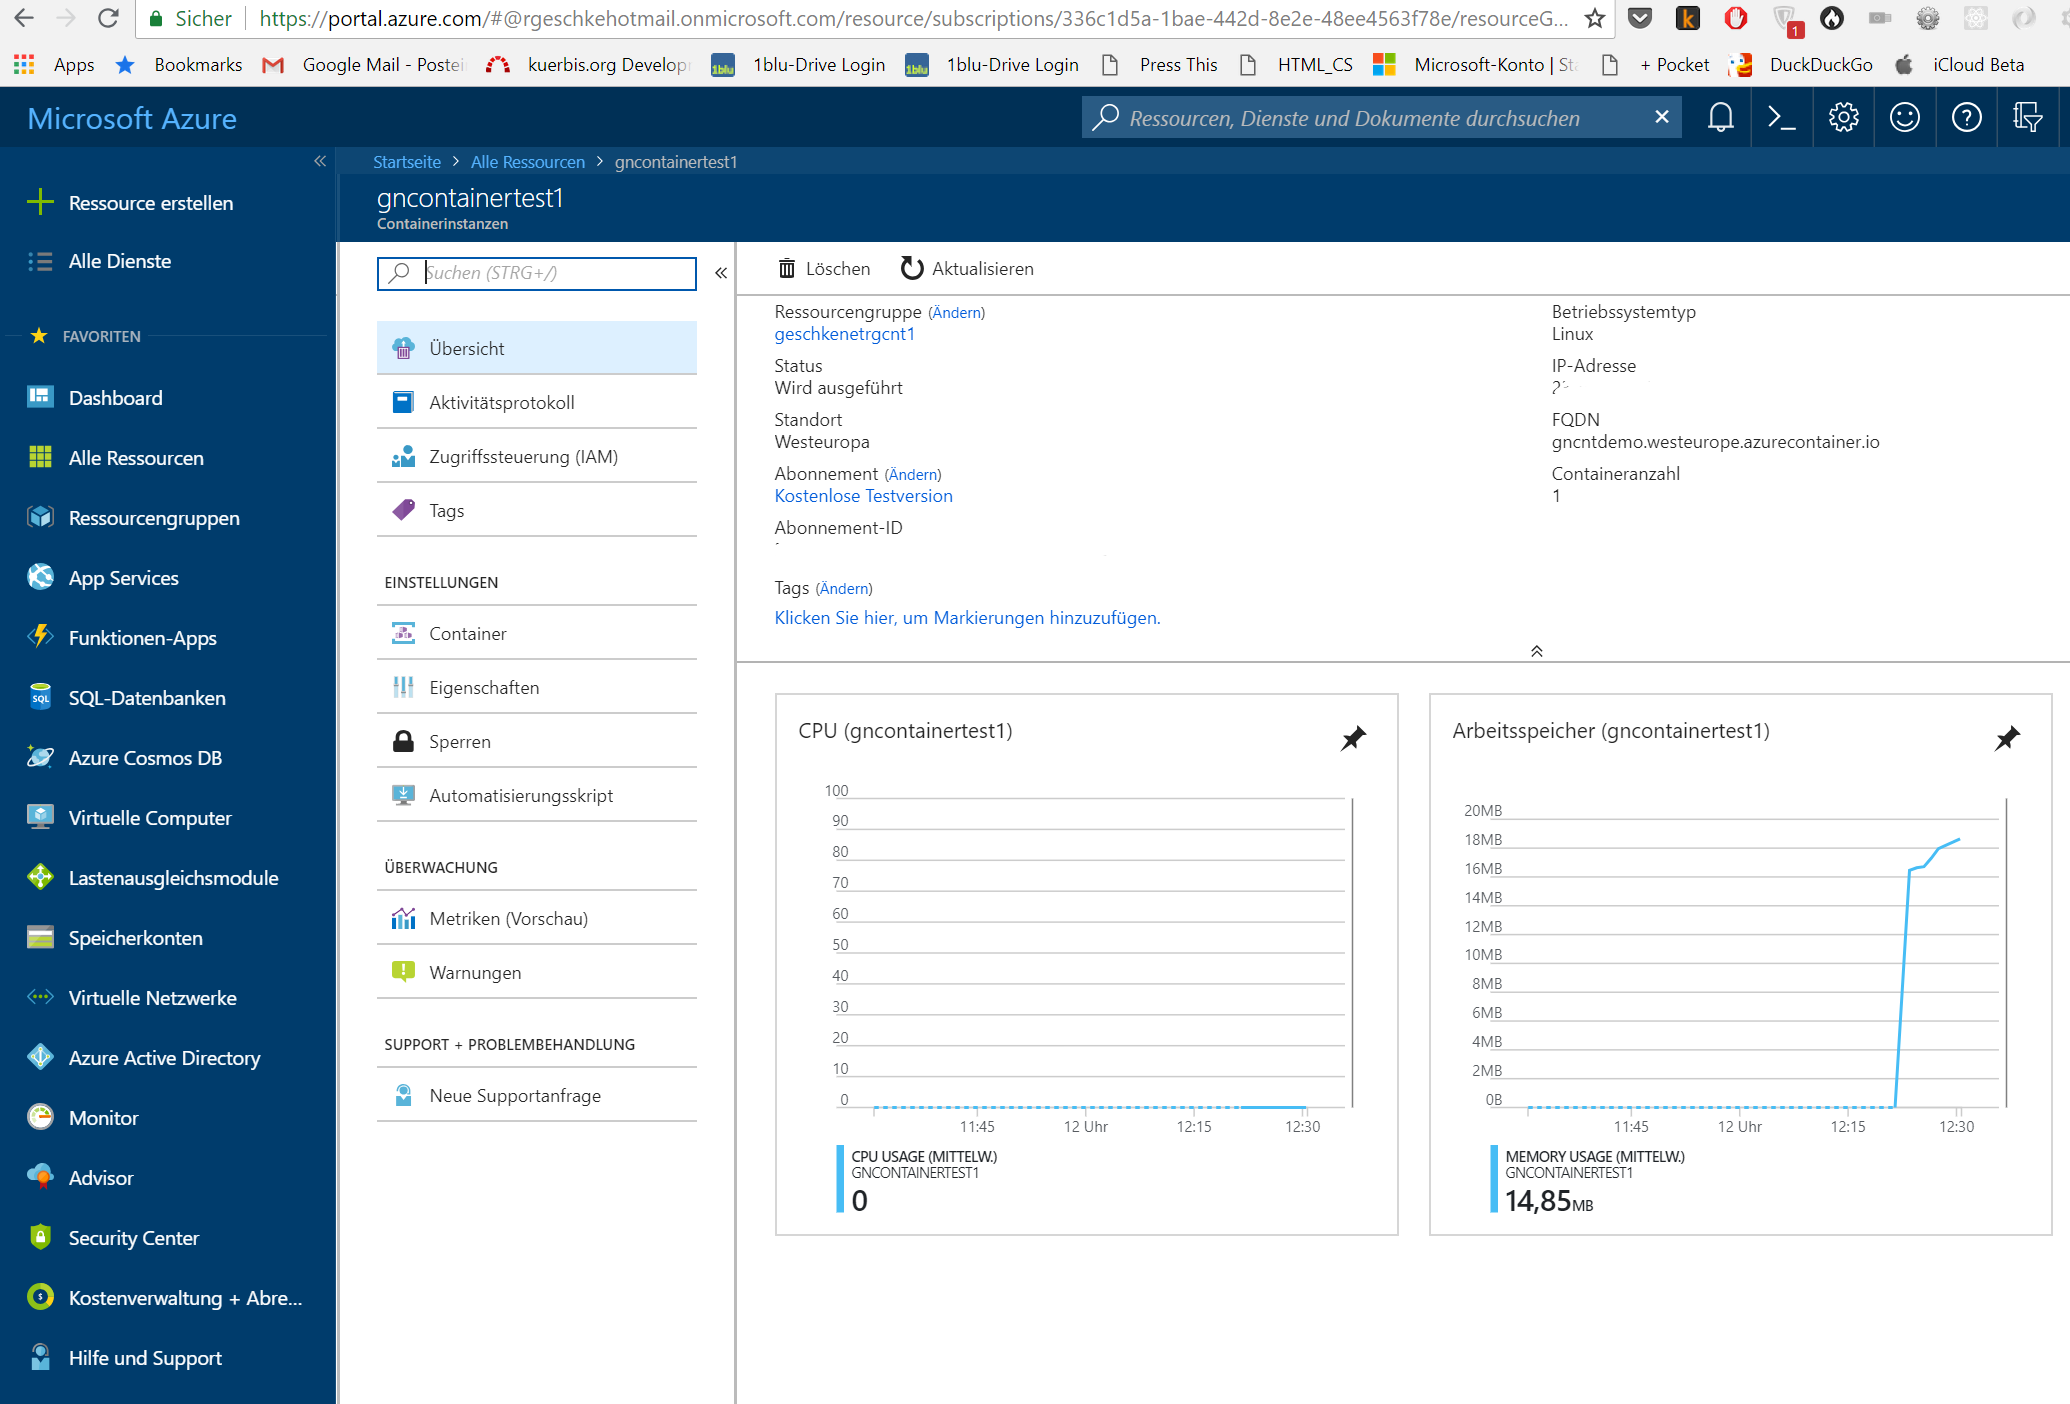 Microsoft Azure Container Instances: erste Eindrücke